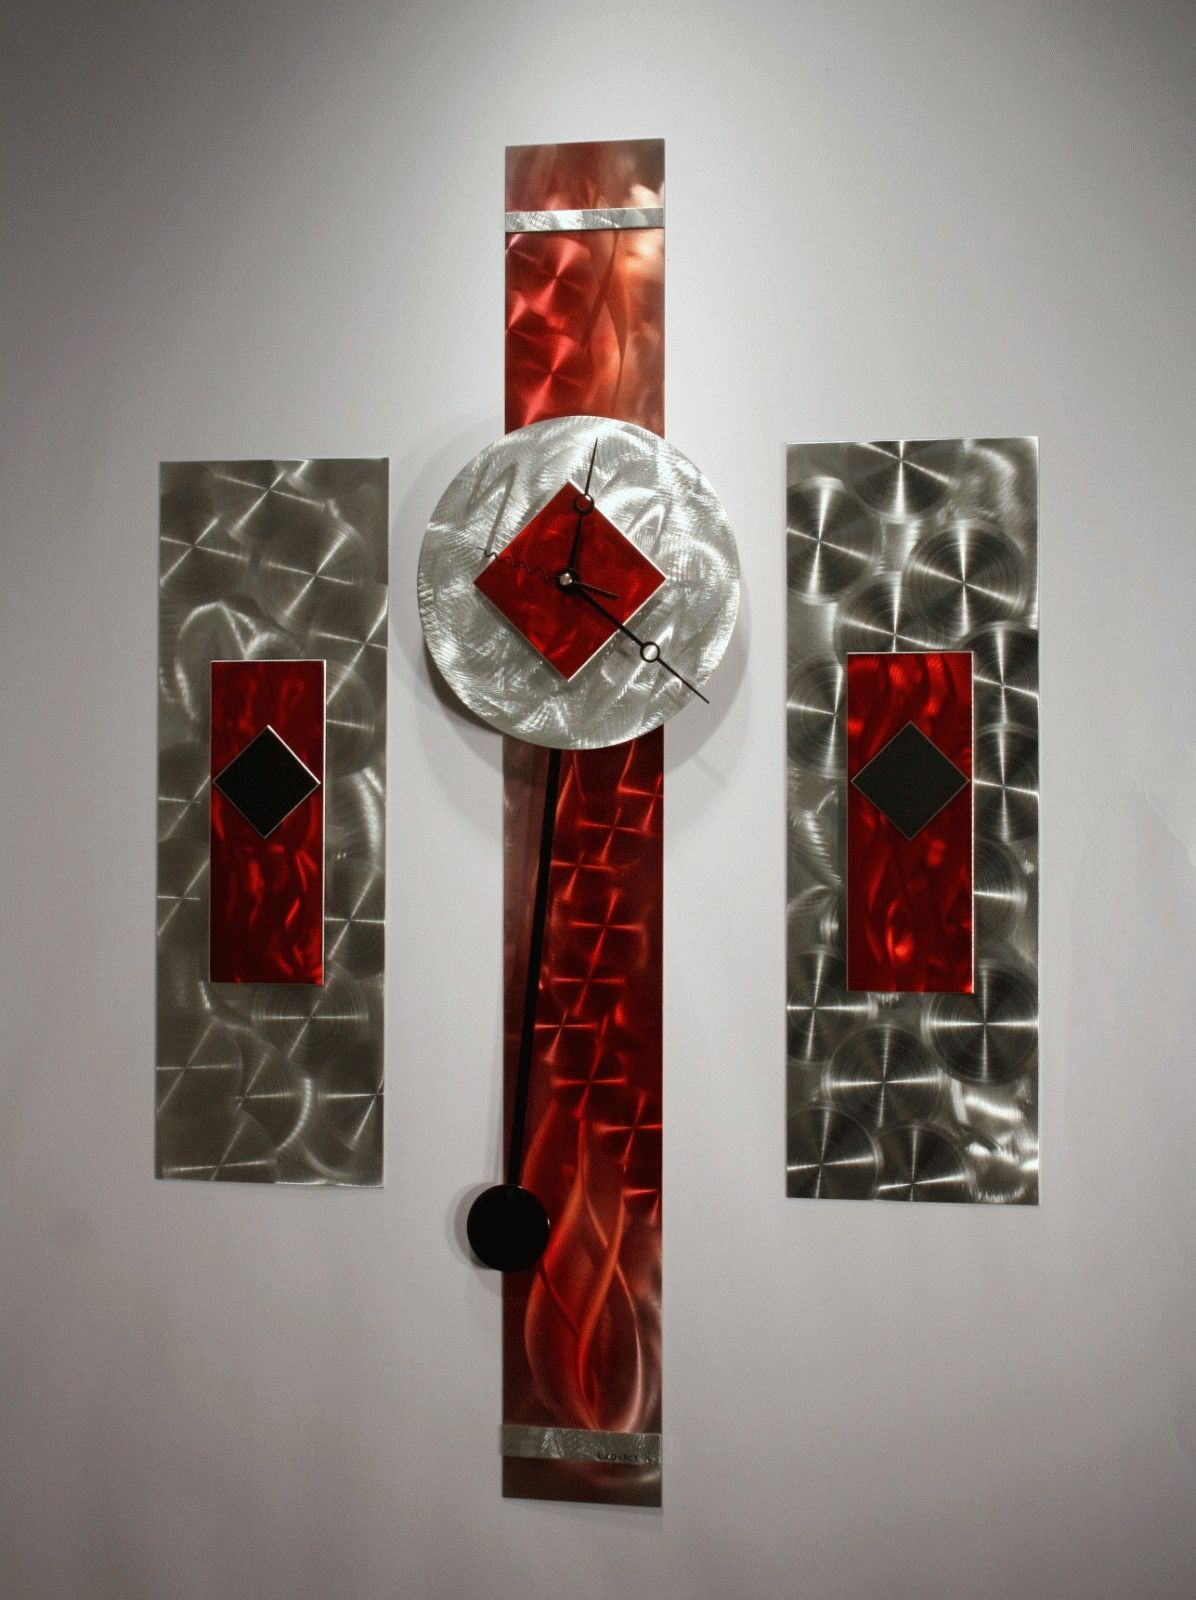 Metal Wall Art Sculpture Pendulum Clock Modern Abstract Decor Throughout Recent Metal Wall Art Sculptures (View 15 of 20)